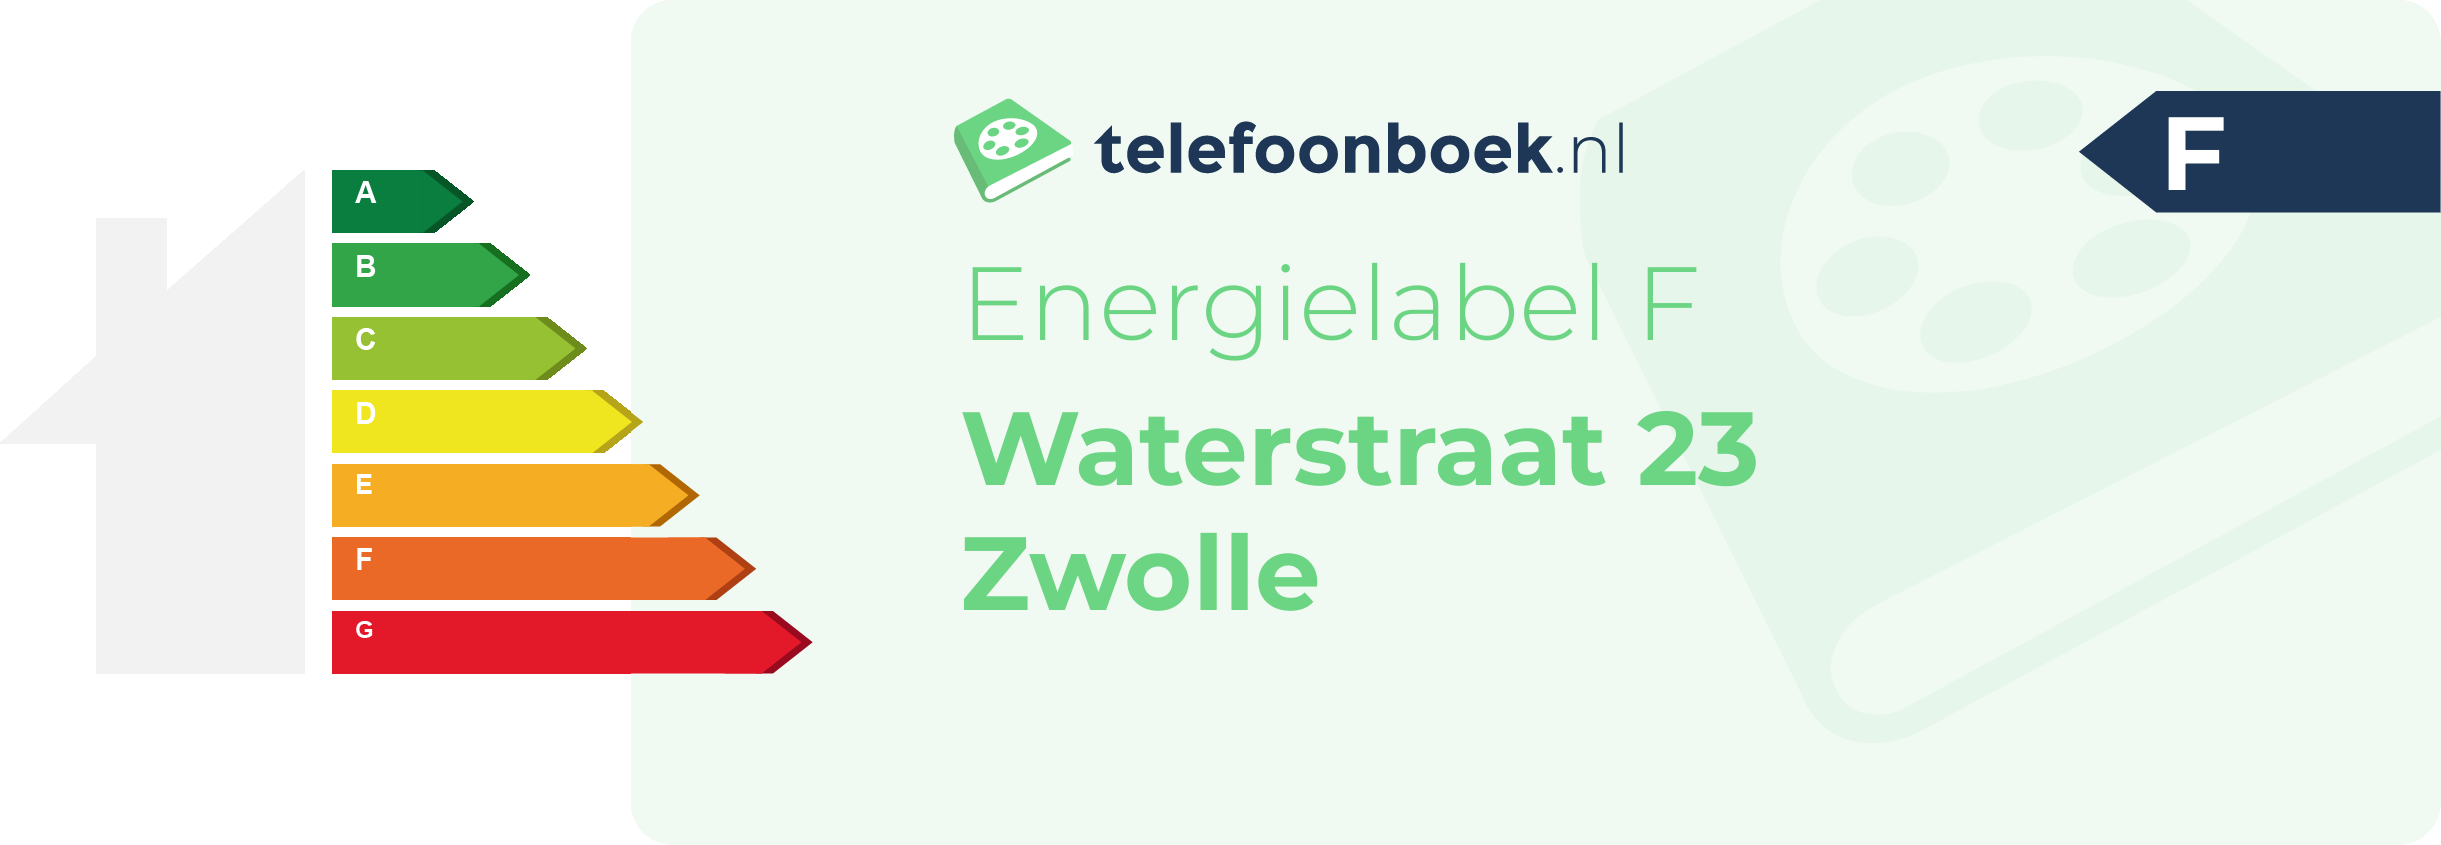 Energielabel Waterstraat 23 Zwolle